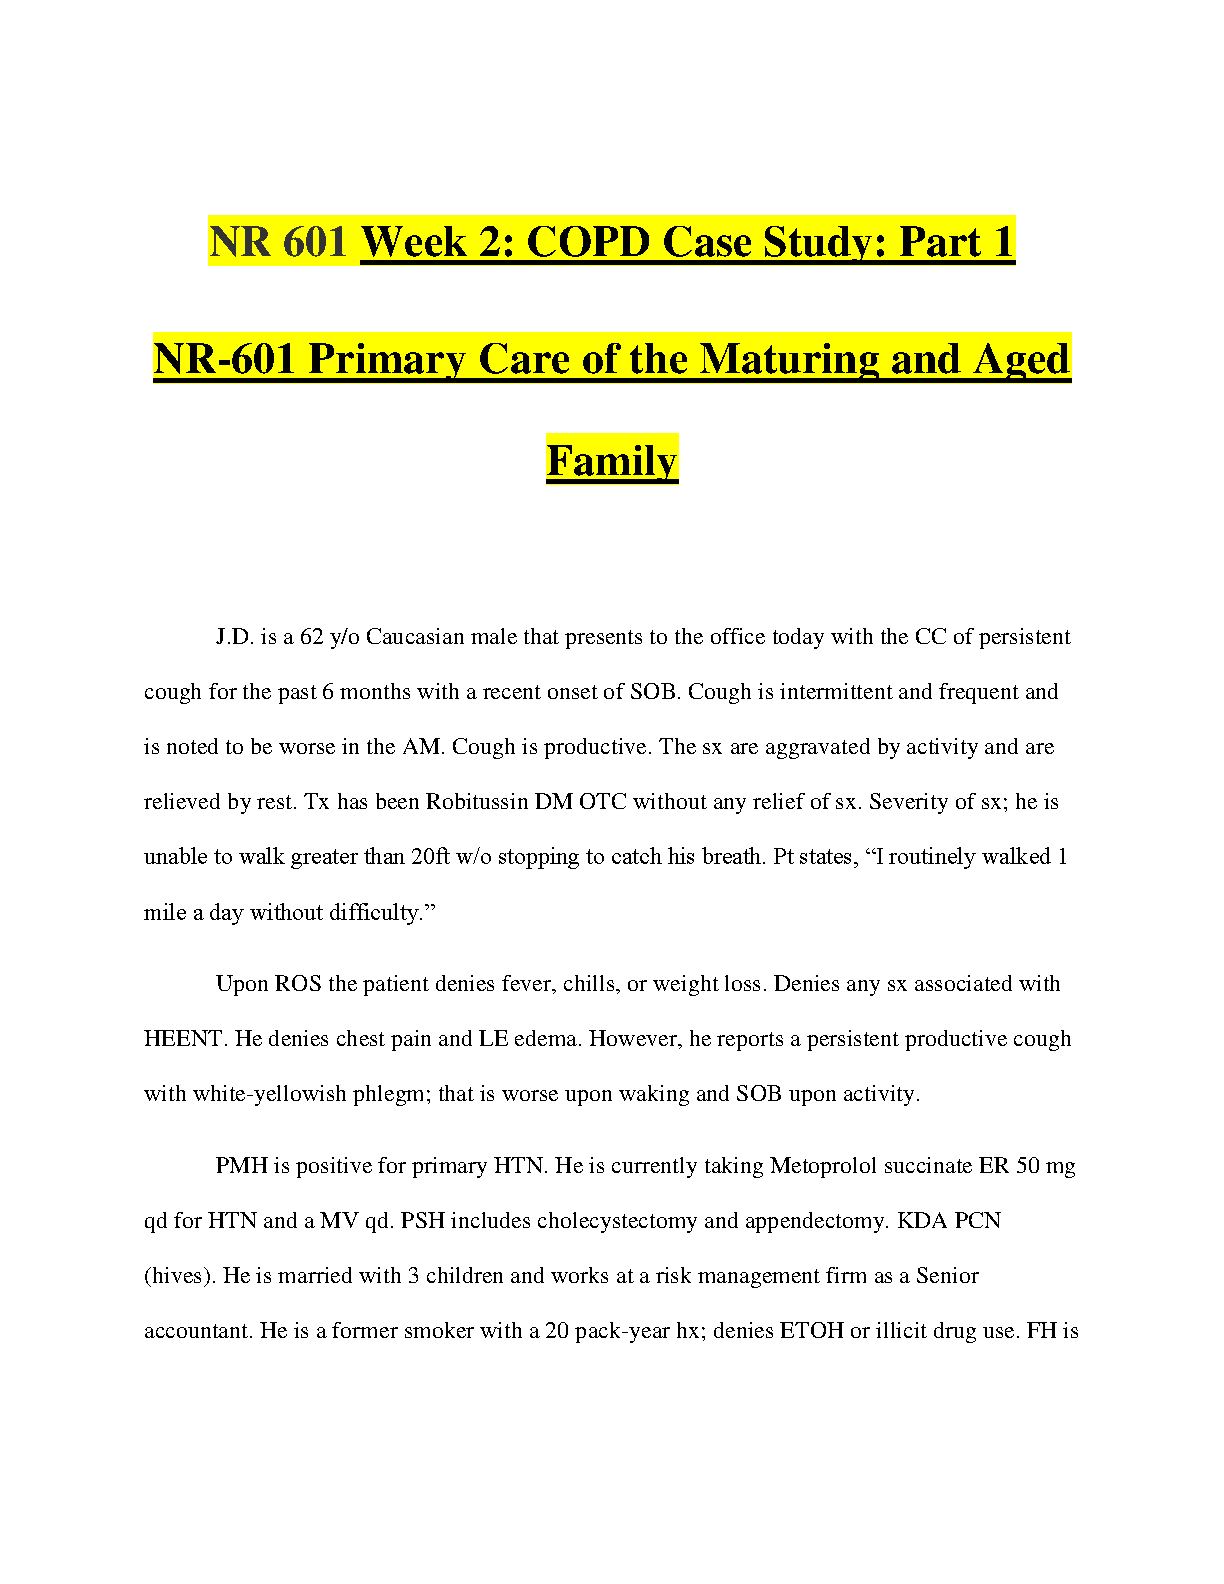 week 2 copd case study part 1